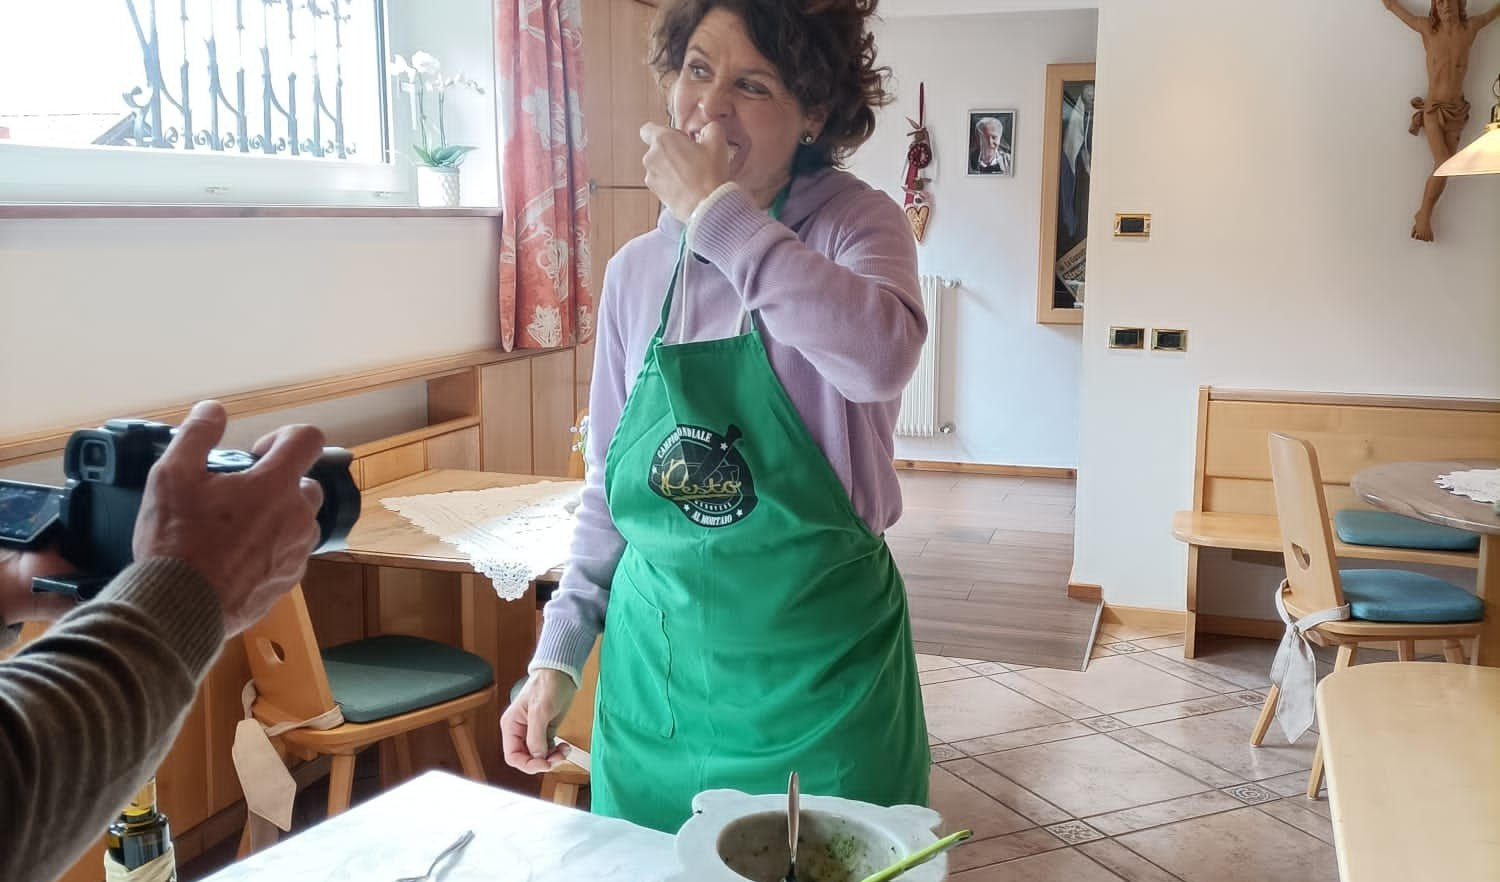 Una donna jet in cucina: Isolde Kostner fa il pesto a Primocanale